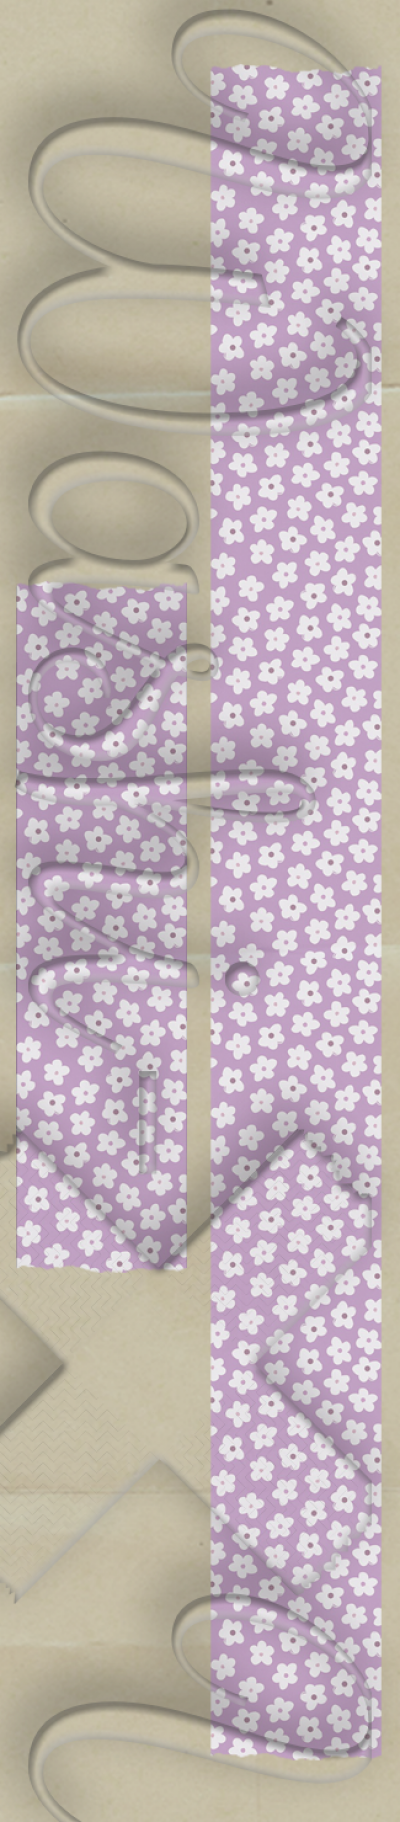 Washi-X Washi Tape Purple-white flowers patterned washi tape